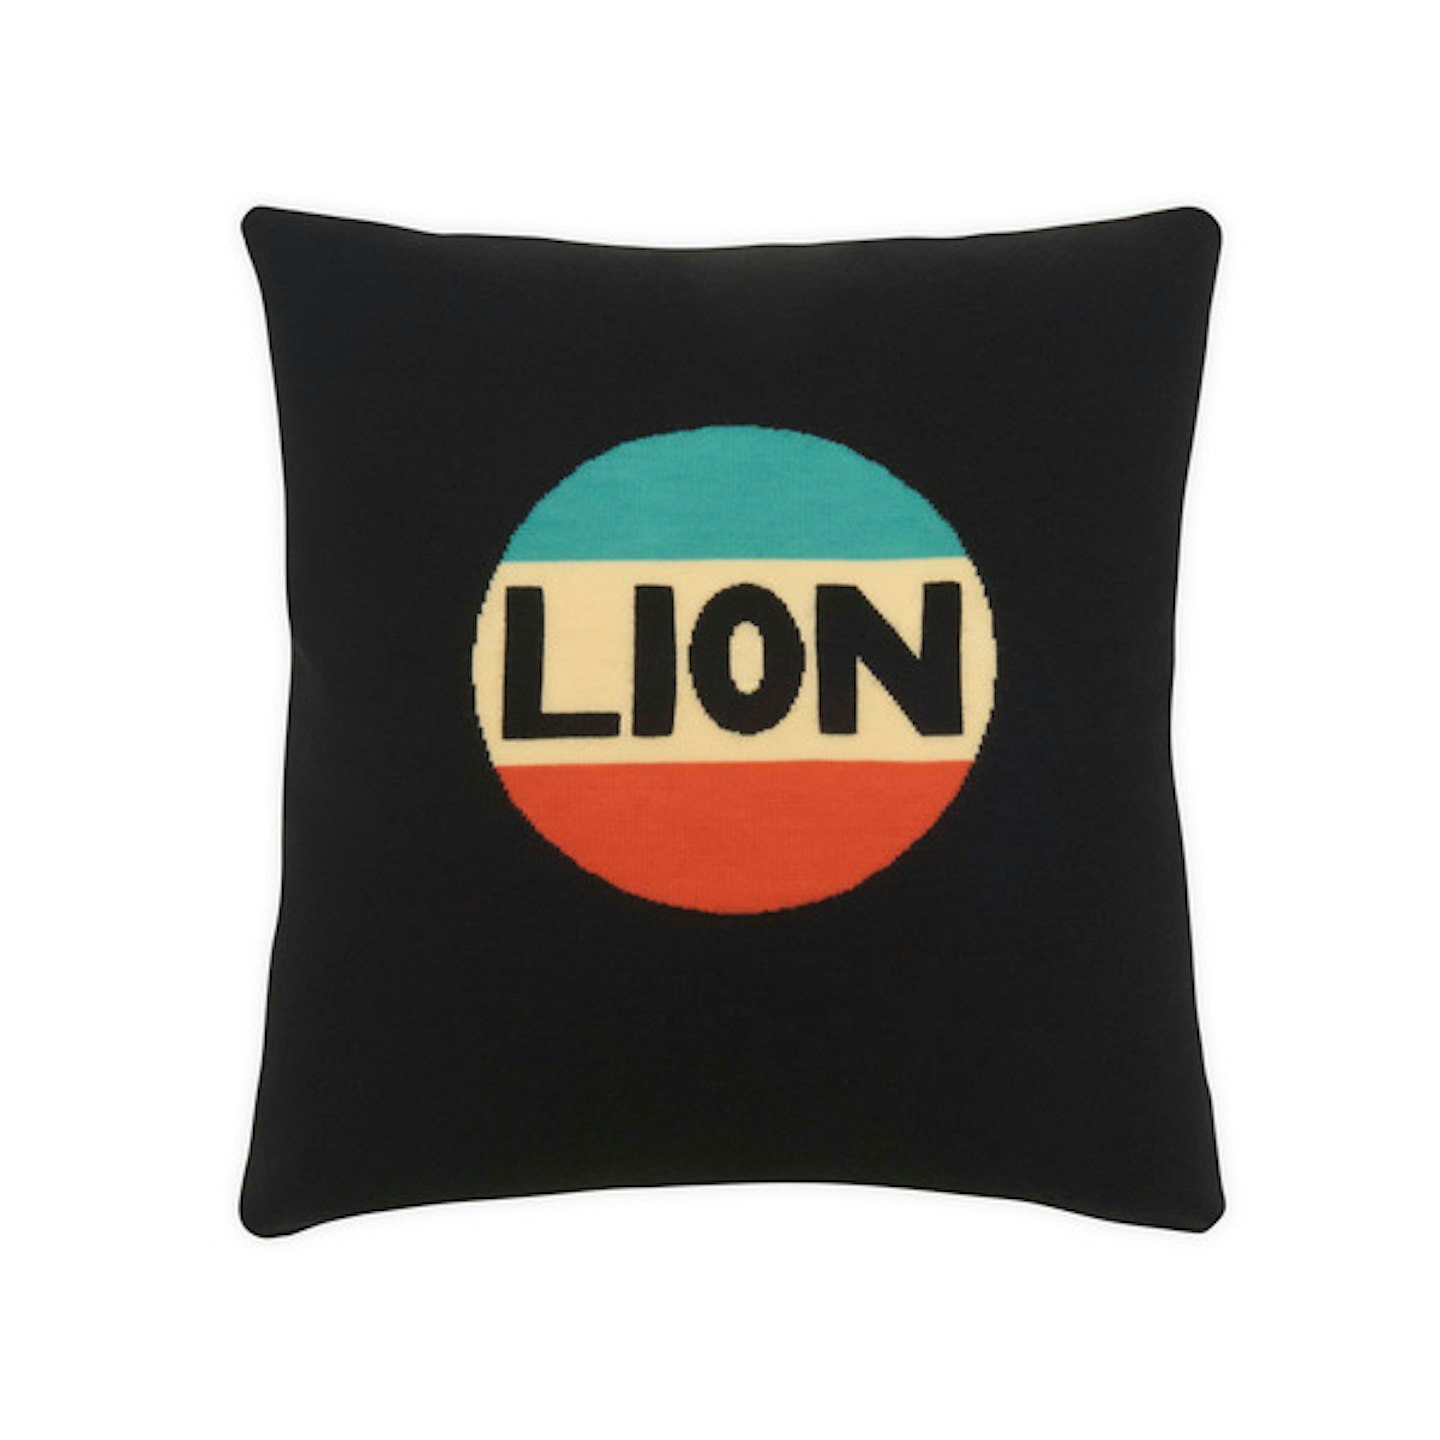 Lion cushion bella freud